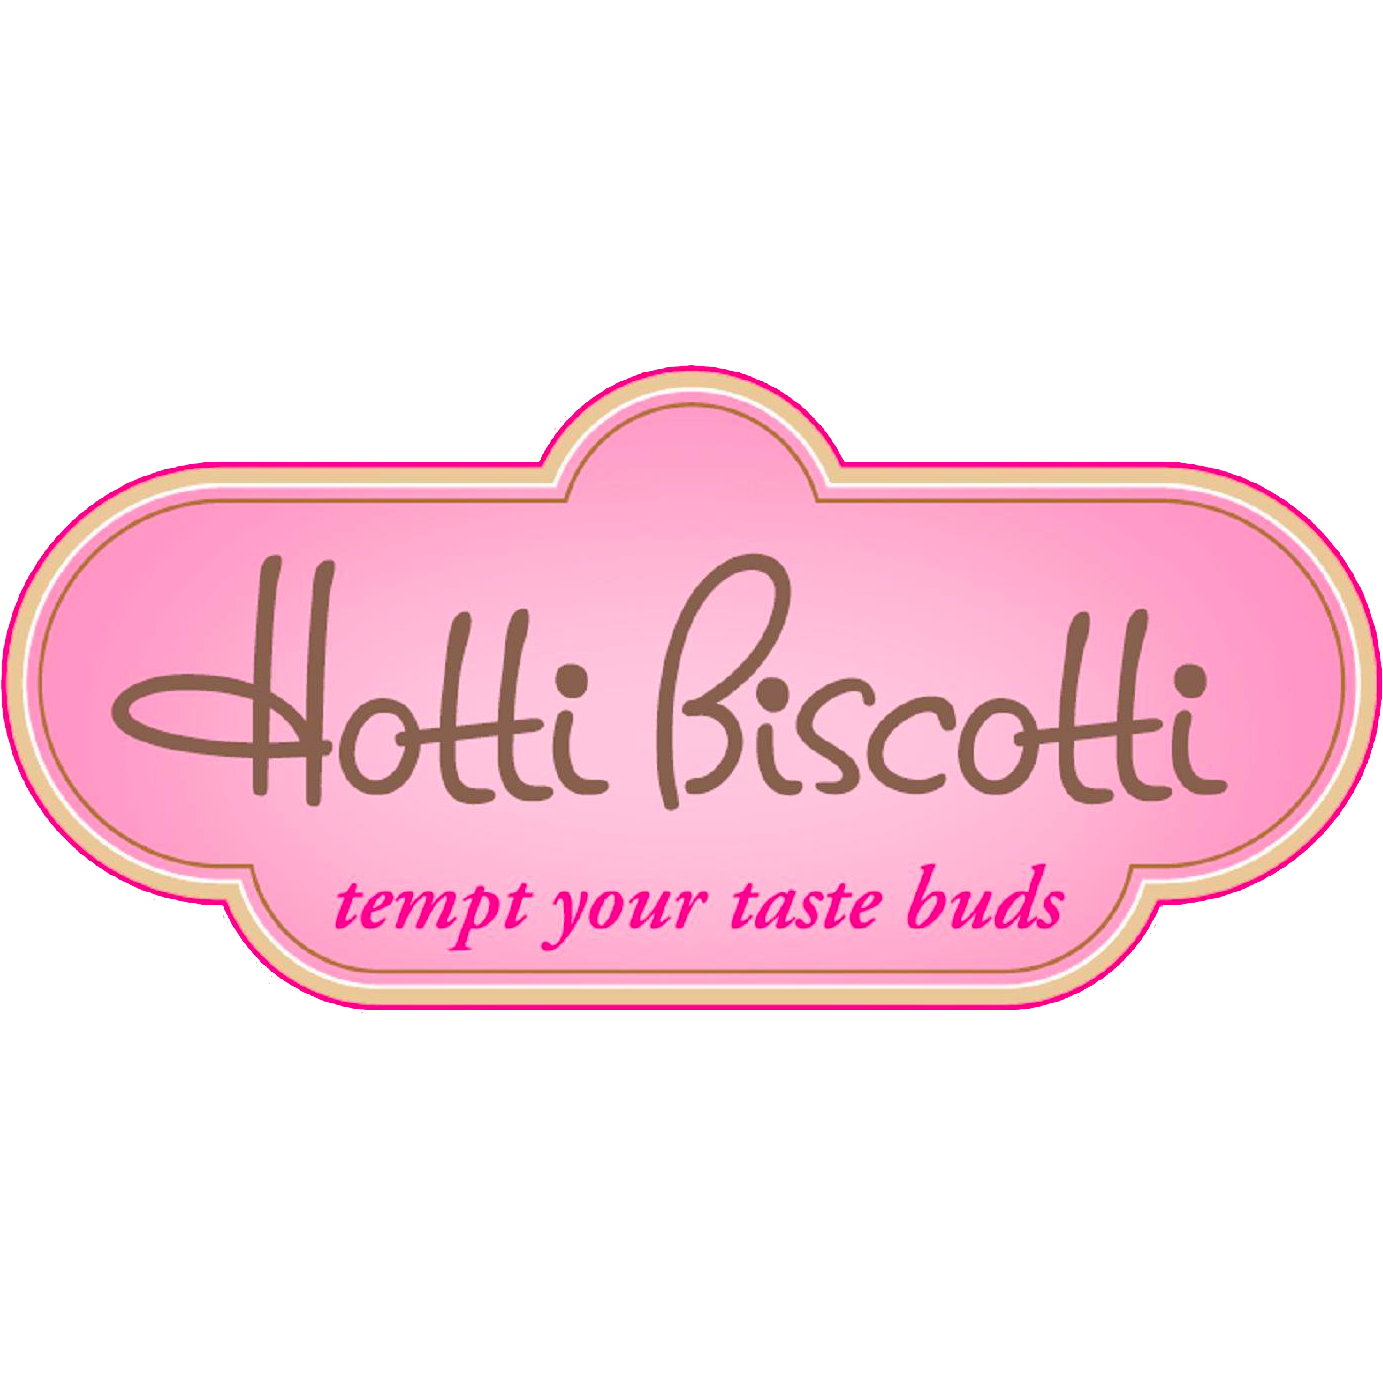 Hotti Biscotti